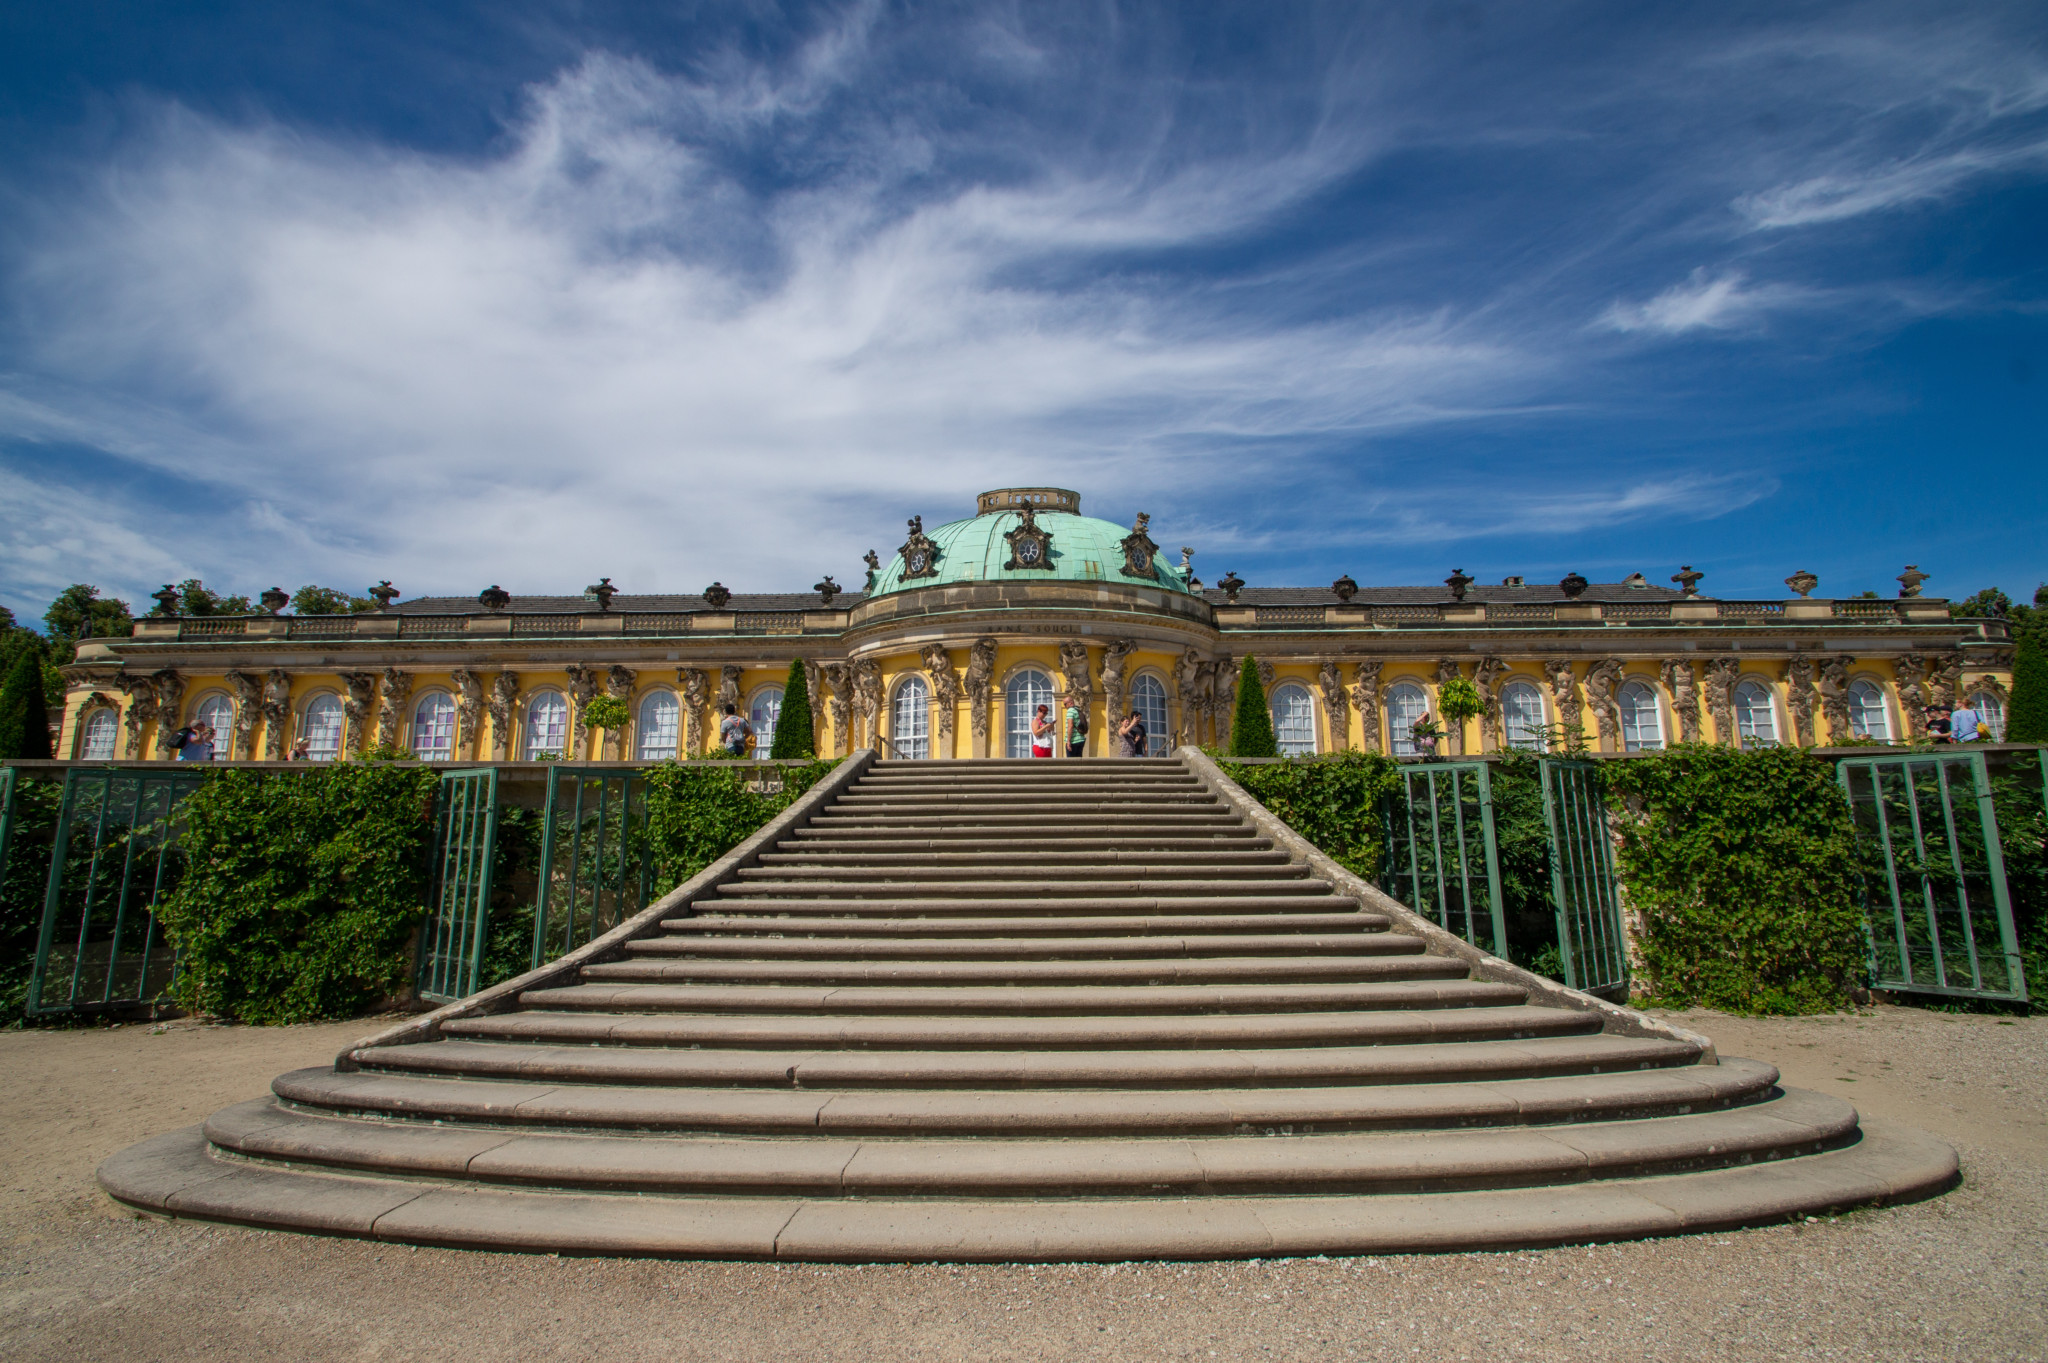 Wer Reiseziele in Ostdeutschland sucht, wird im Schloss Sanssouci in Potsdam fündig